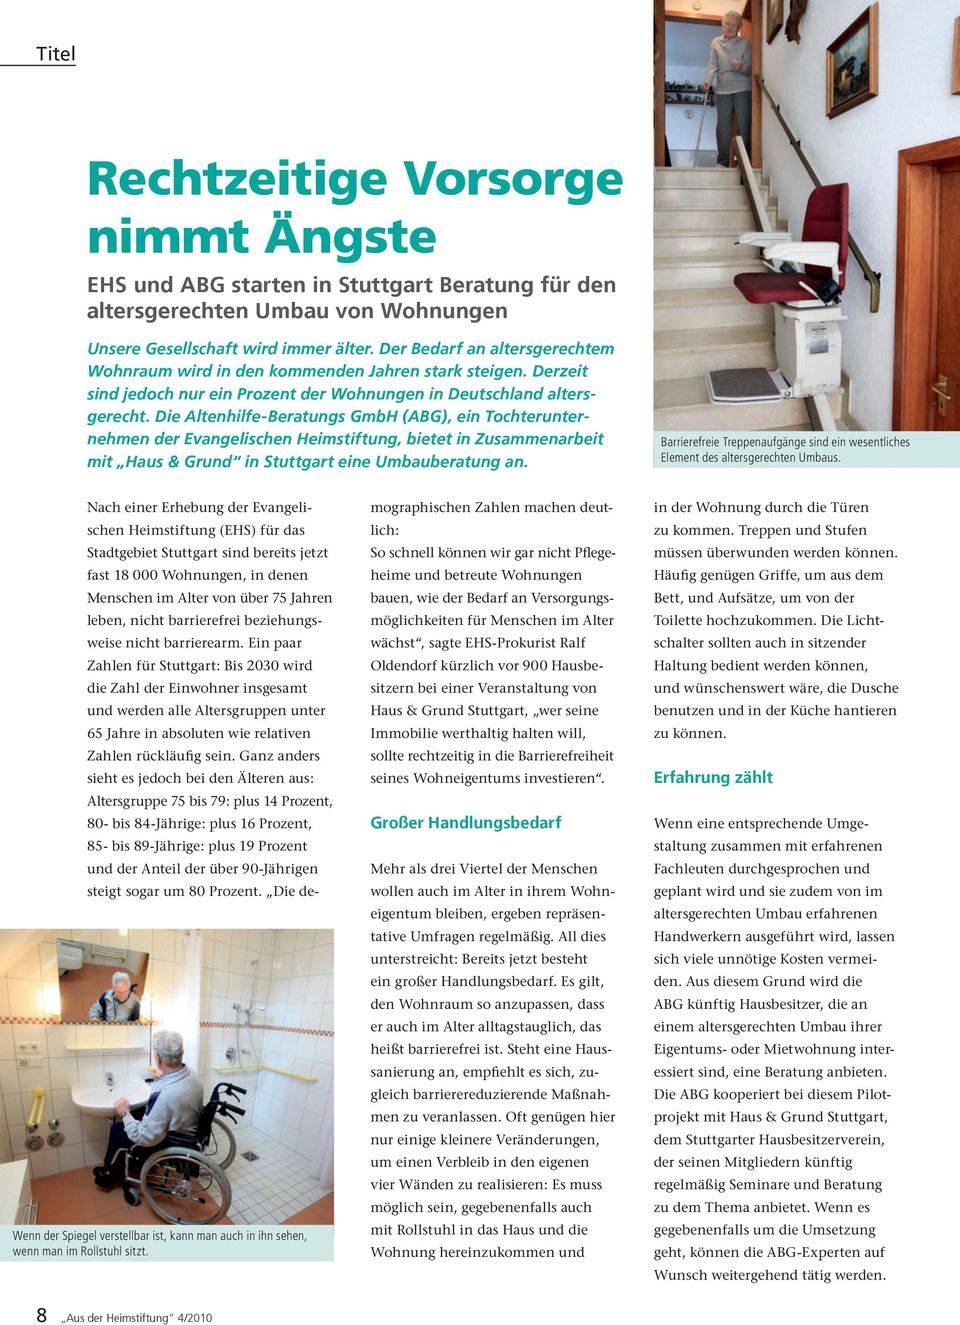 Die Altenhilfe-Beratungs GmbH (ABG), ein Tochterunternehmen der Evangelischen Heimstiftung, bietet in Zusammenarbeit mit Haus & Grund in Stuttgart eine Umbauberatung an.